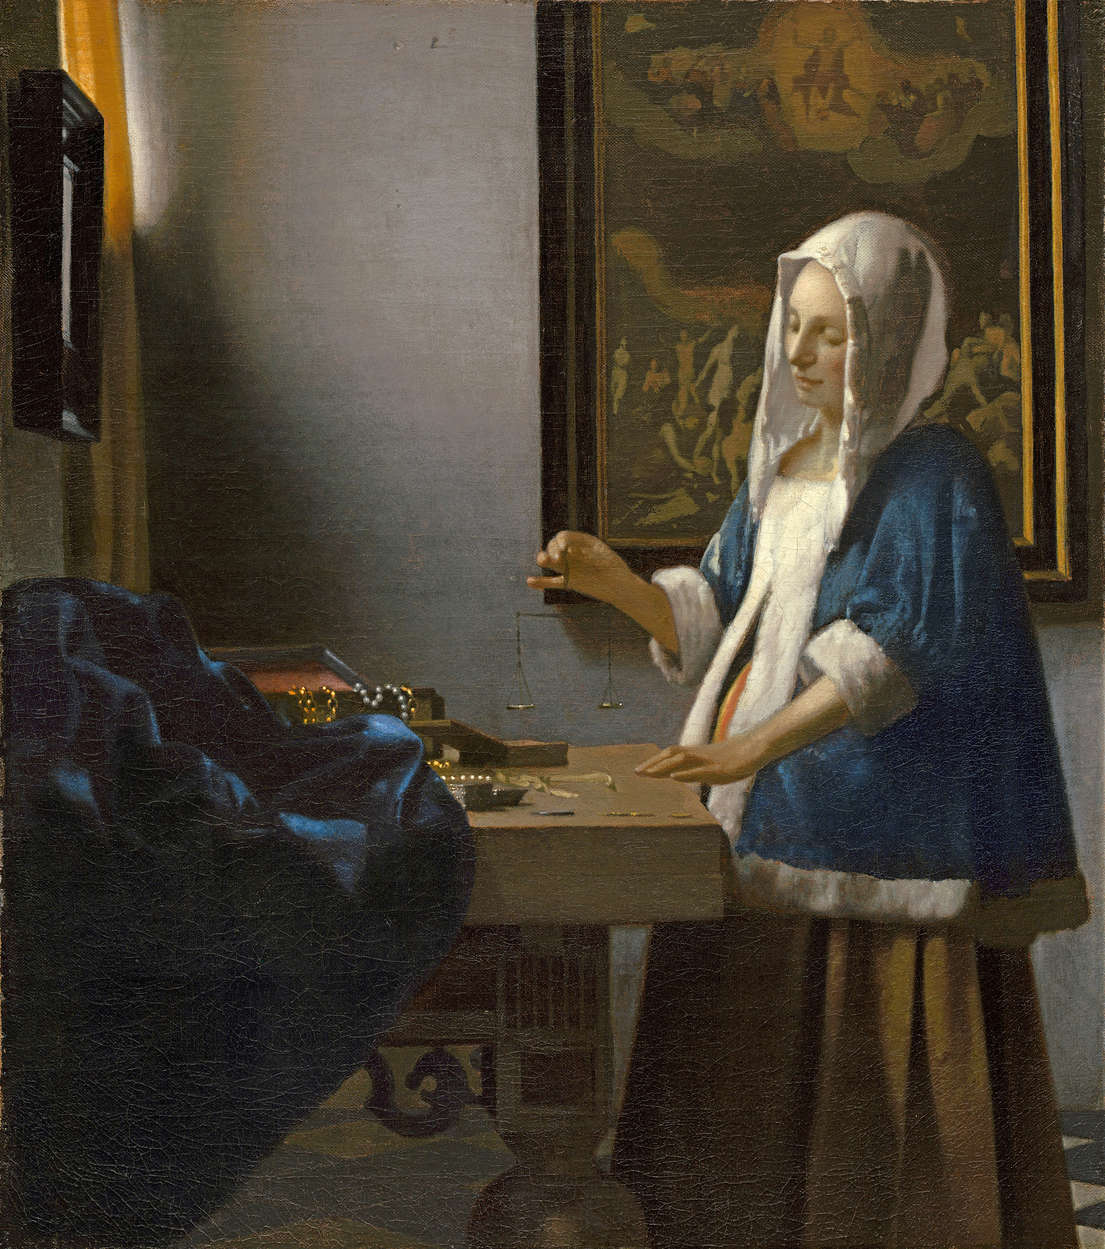             Fotomurali "Donna con bilancia" di Jan Vermeer
        